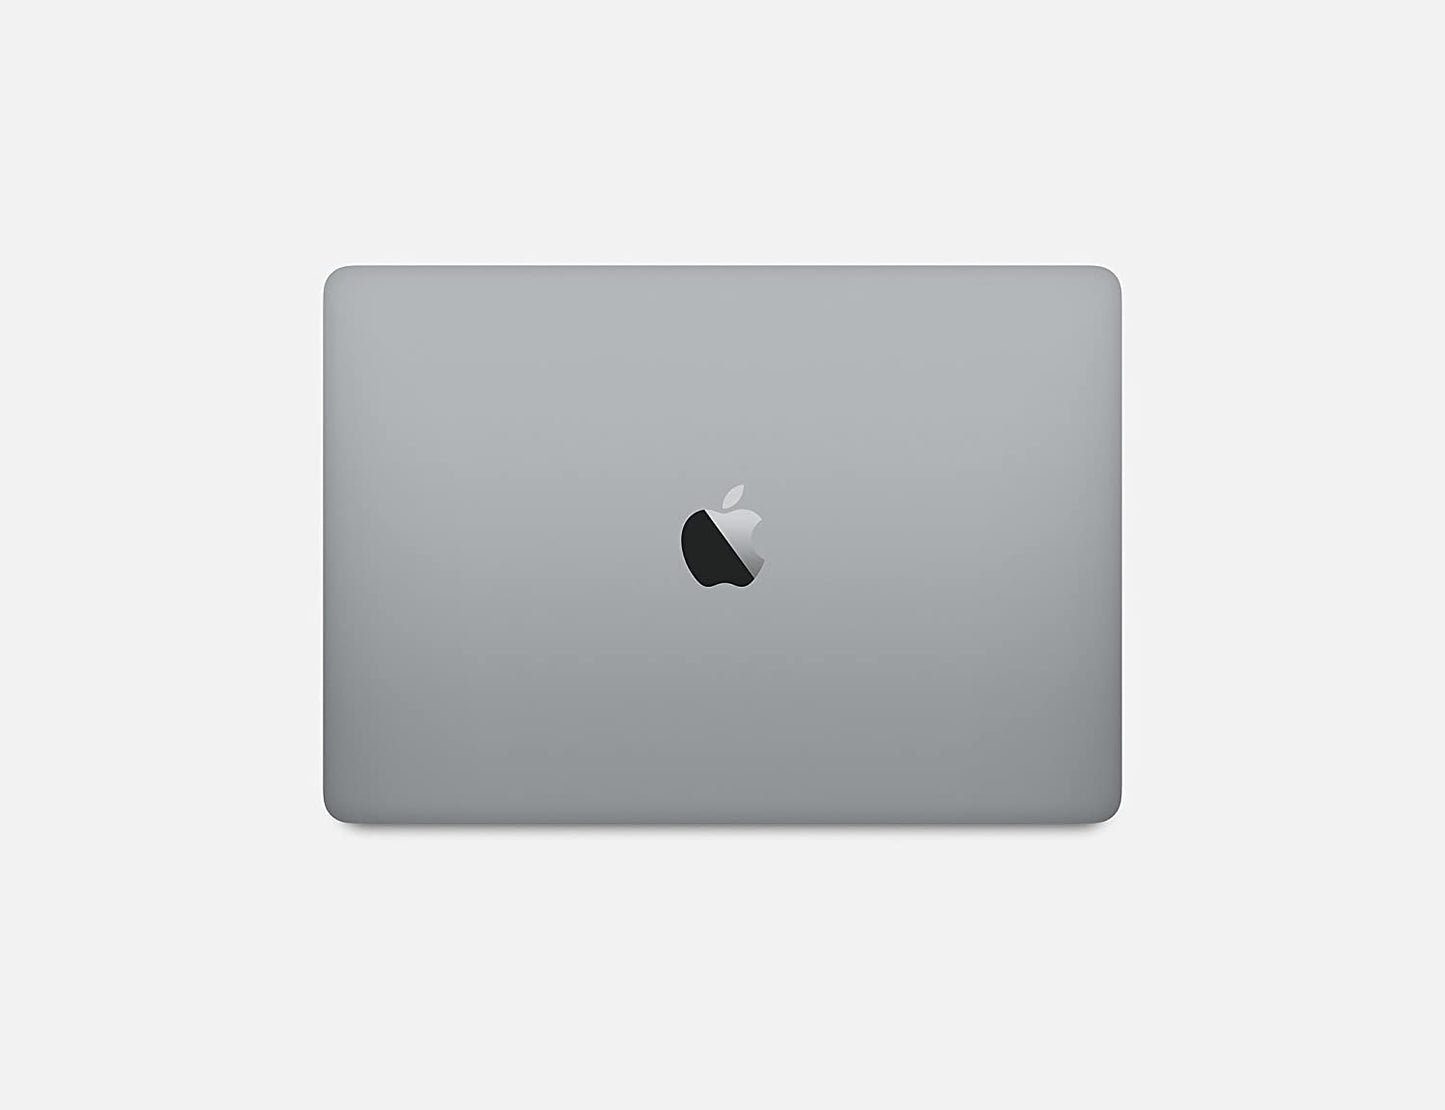 Apple MacBook Pro 2016| A1708 MLL42LL/A |Corei5 |8GB RAM |128GB SSD